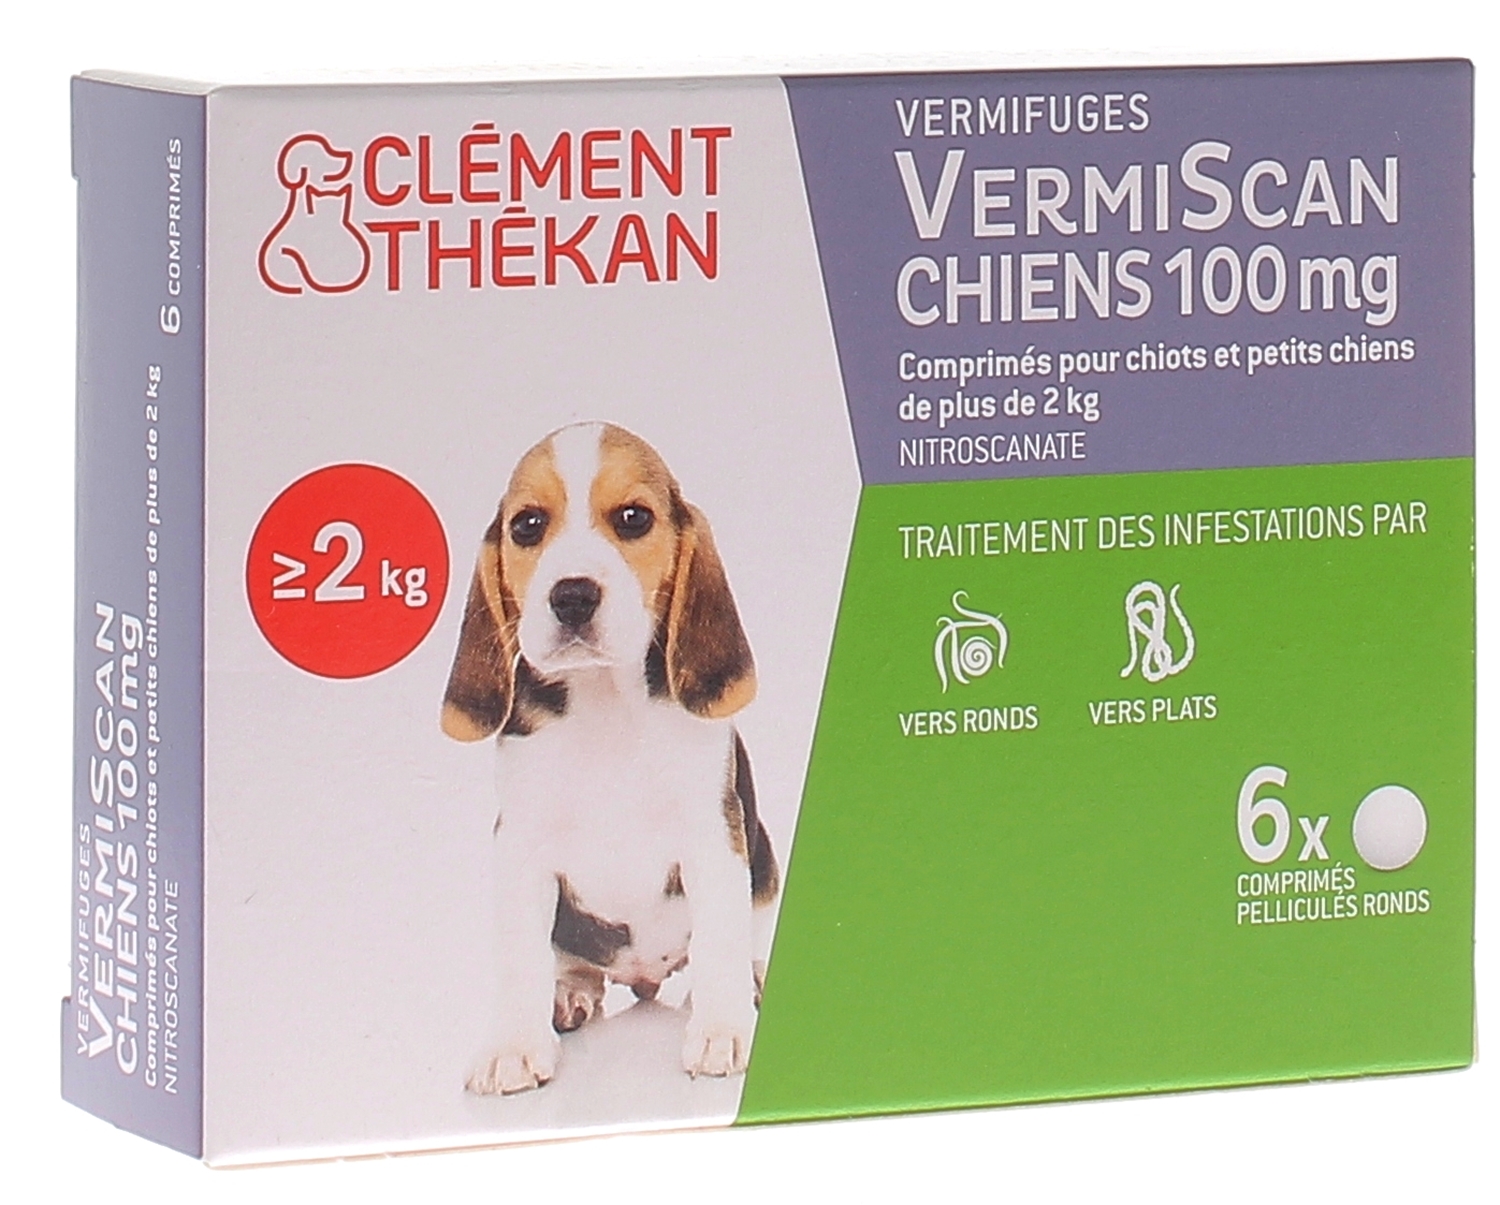 Biocanina Milbetel vermifuges pour petits chiens et chiots 2